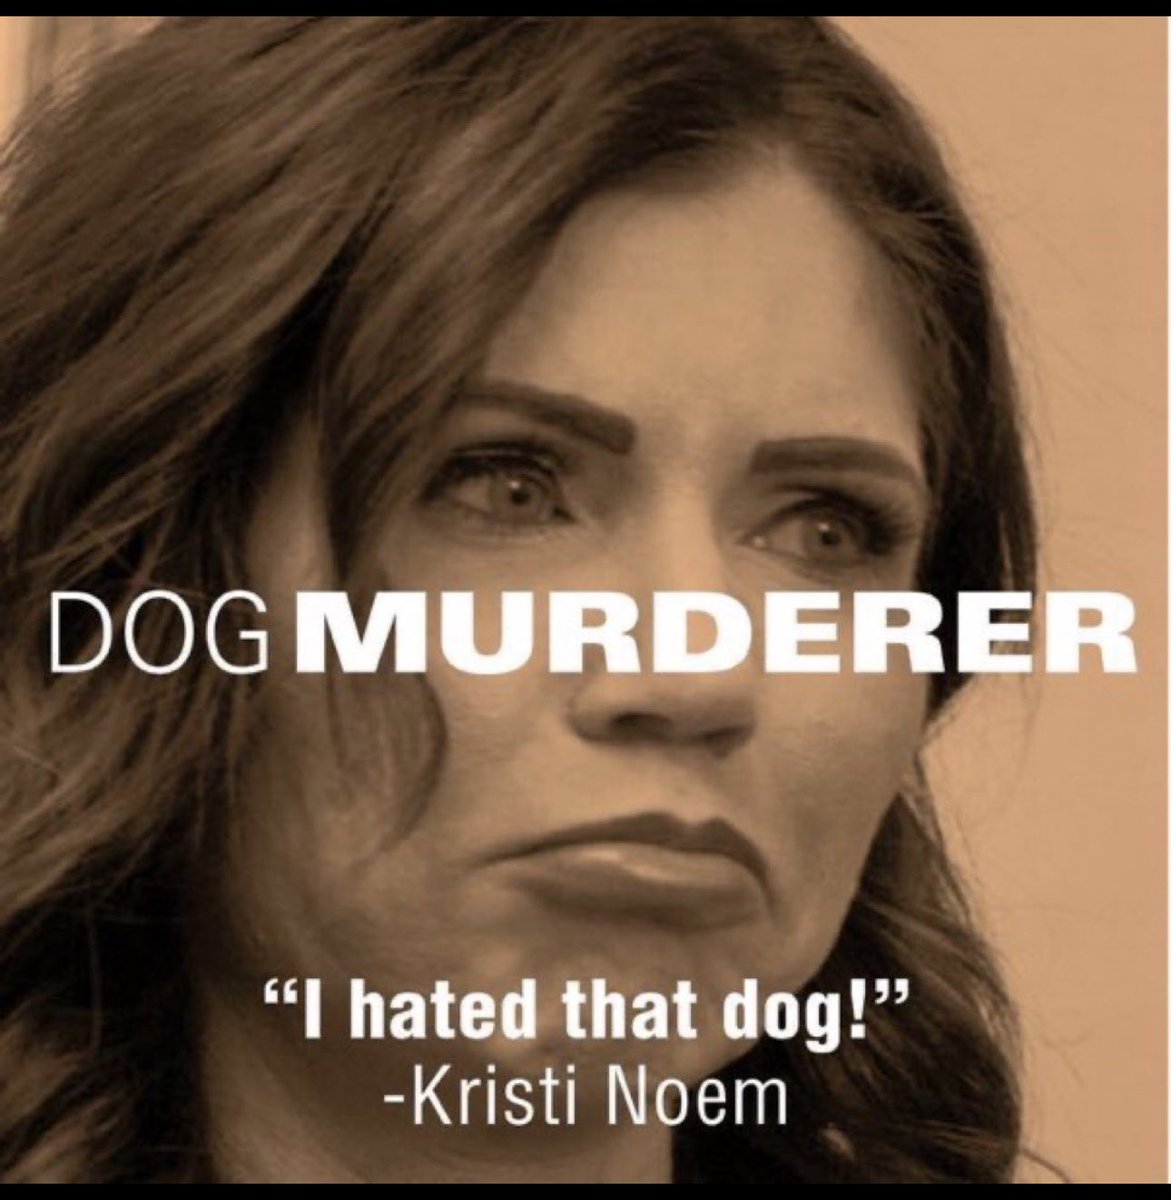 @KristiNoem #KristiNoemIsAMonster 
#PuppyKillerKristiNoem